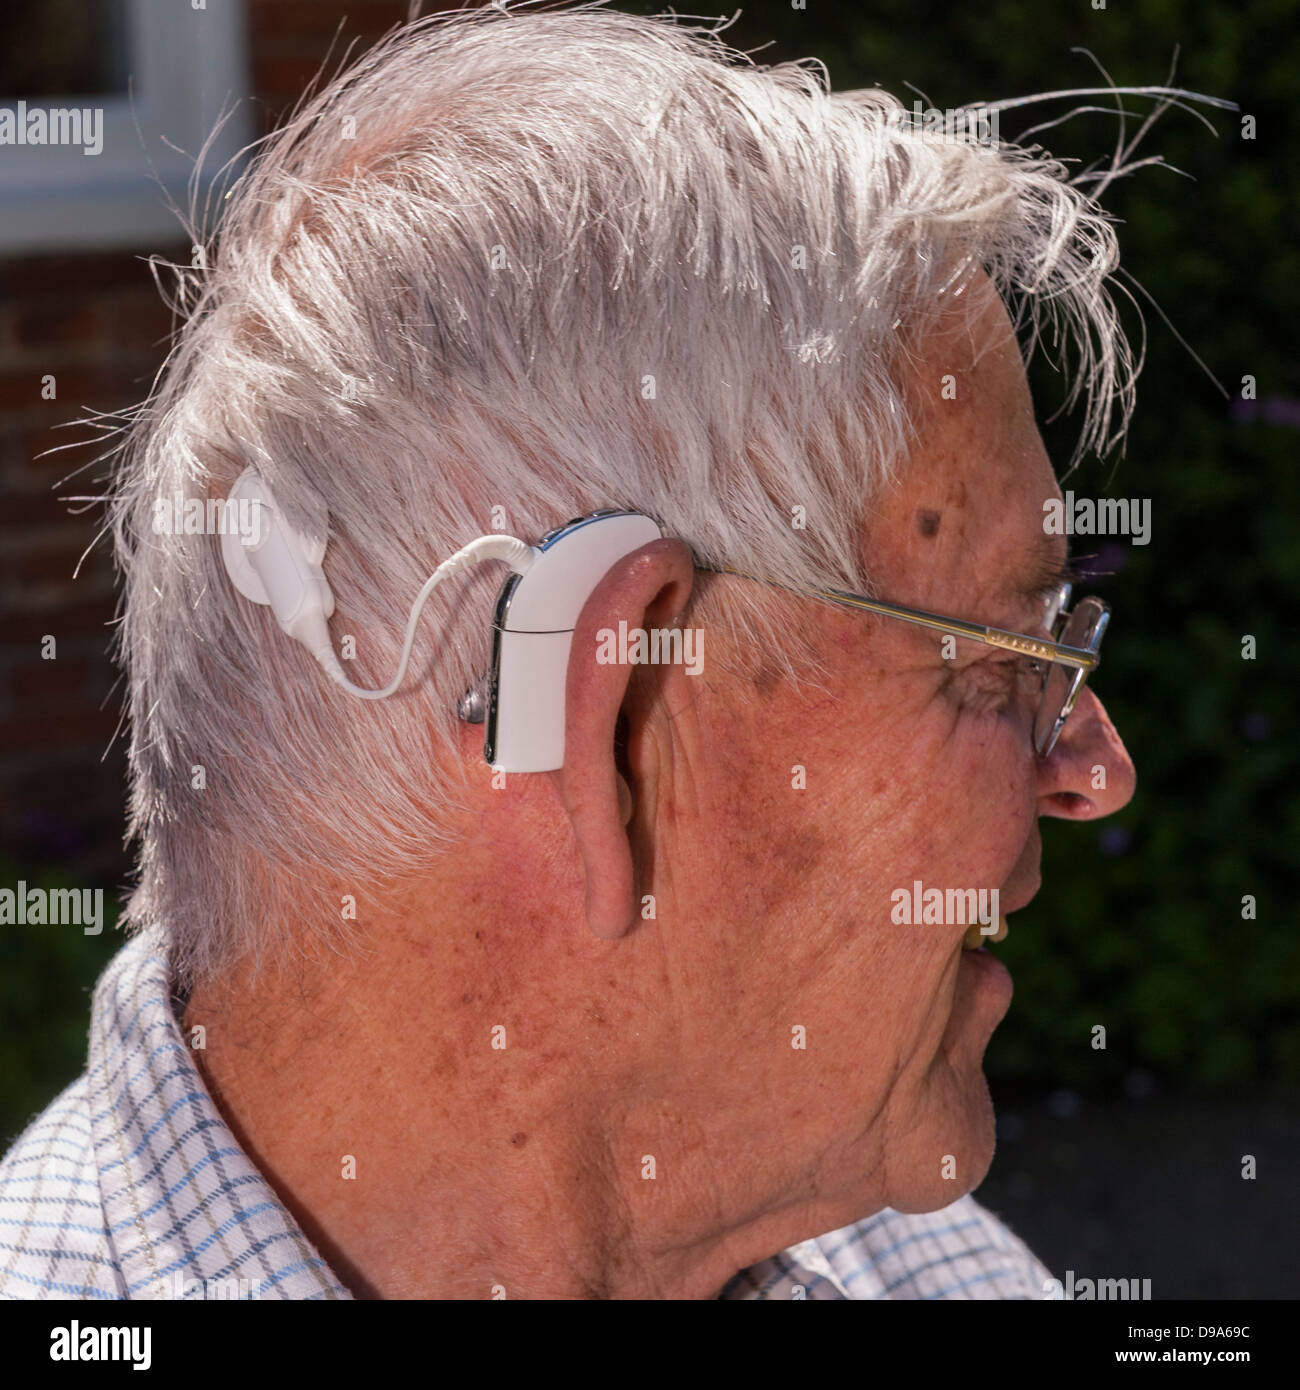 Eine Nahaufnahme von einem älteren Mann mit seinem Hörgerät Cochlea-Implantat in England, Großbritannien, Vereinigtes Königreich Stockfoto